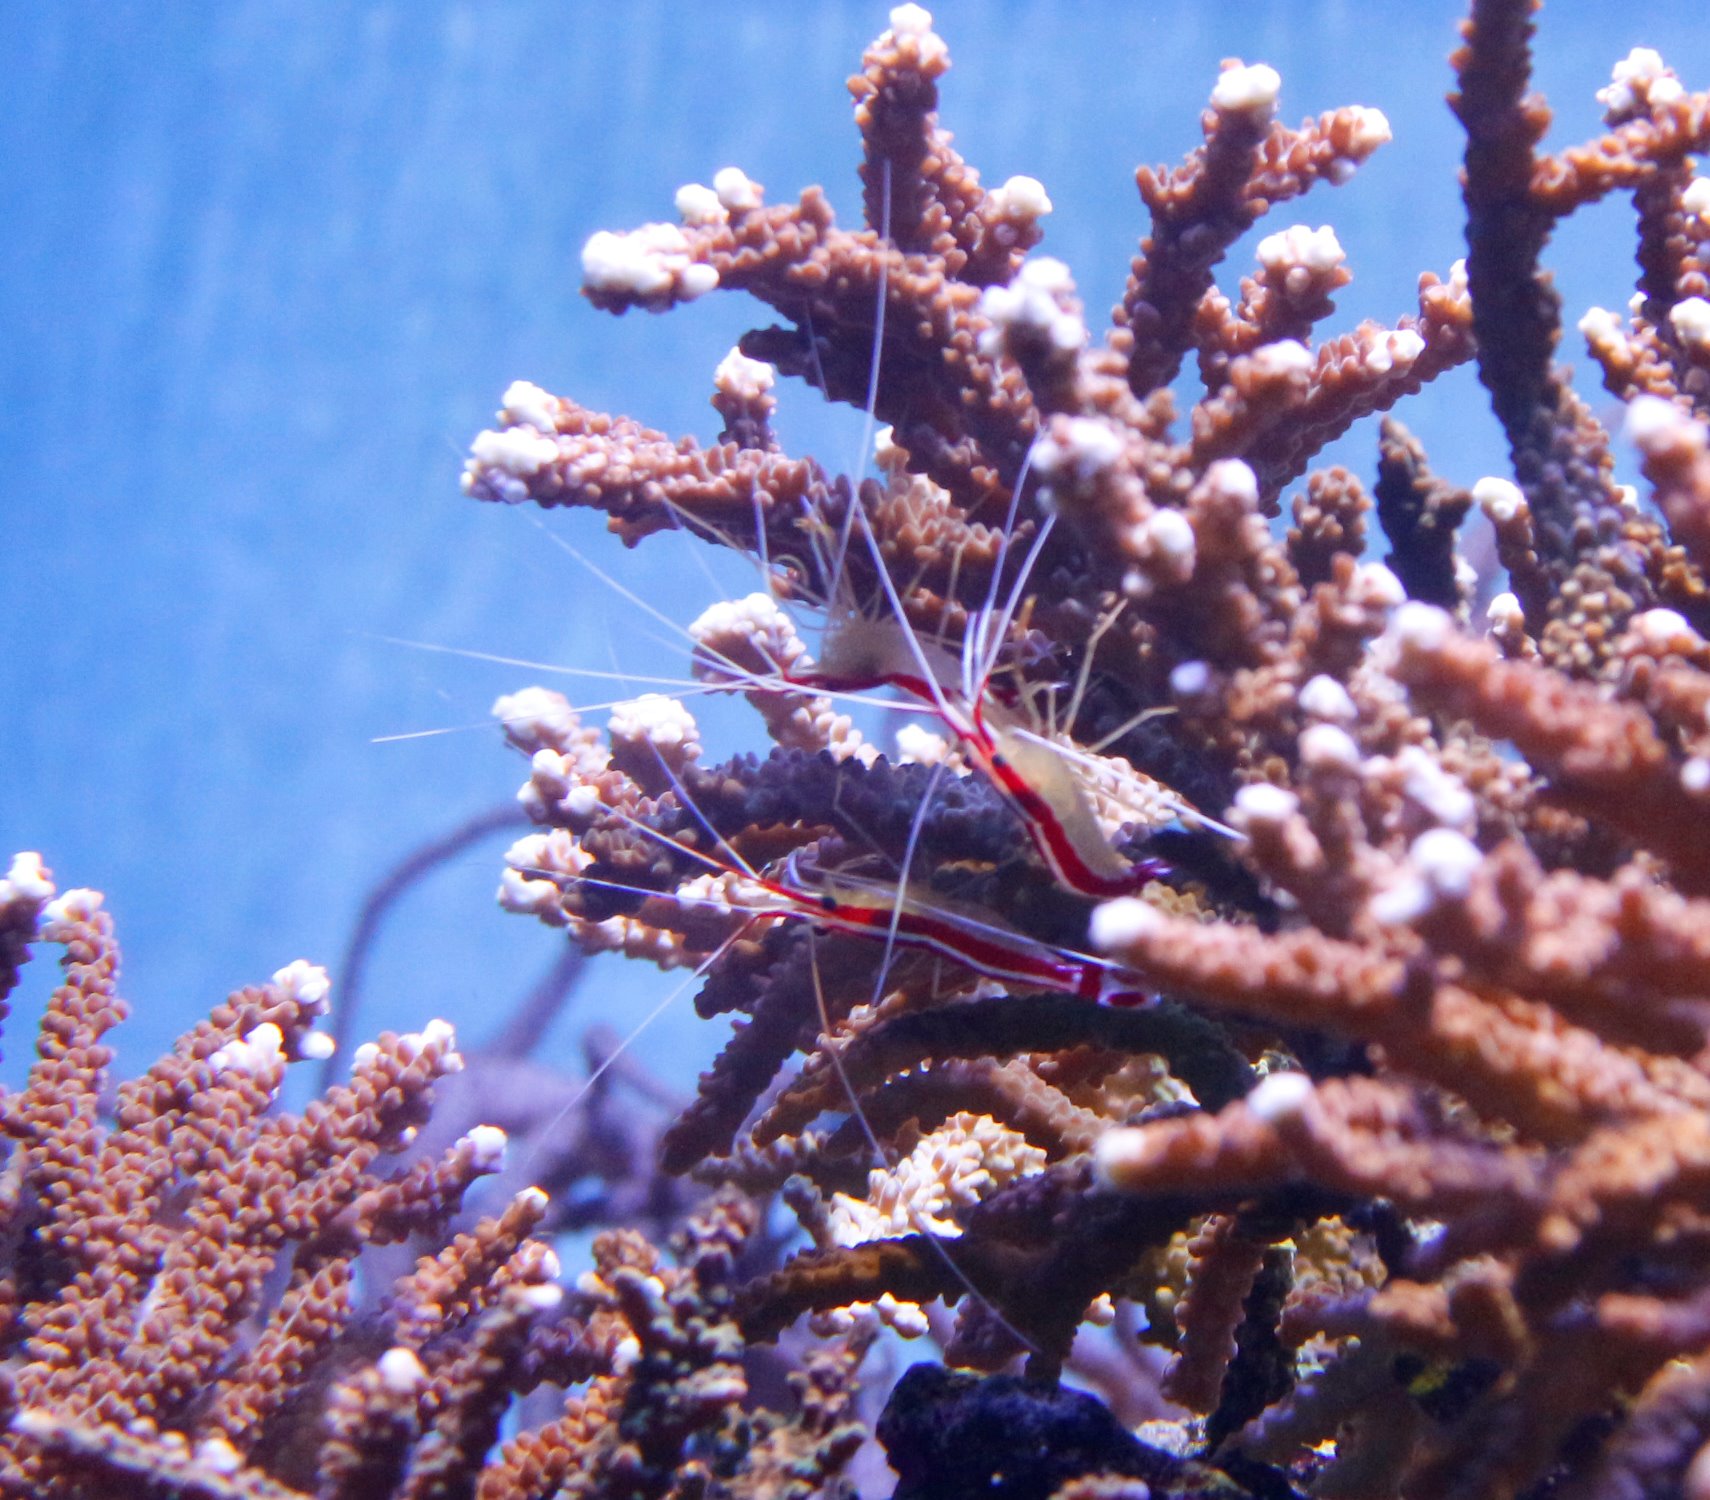 葛西臨海水族園 公式 特設展 海のゆりかご 新しく アカシマシラヒゲエビがデビューしました 岩やサンゴのあたりで ぴょこぴょこ動く白いヒゲが目印です このエビは サンゴ礁にくらす魚の体表に着いた寄生虫などを食べてくらしています